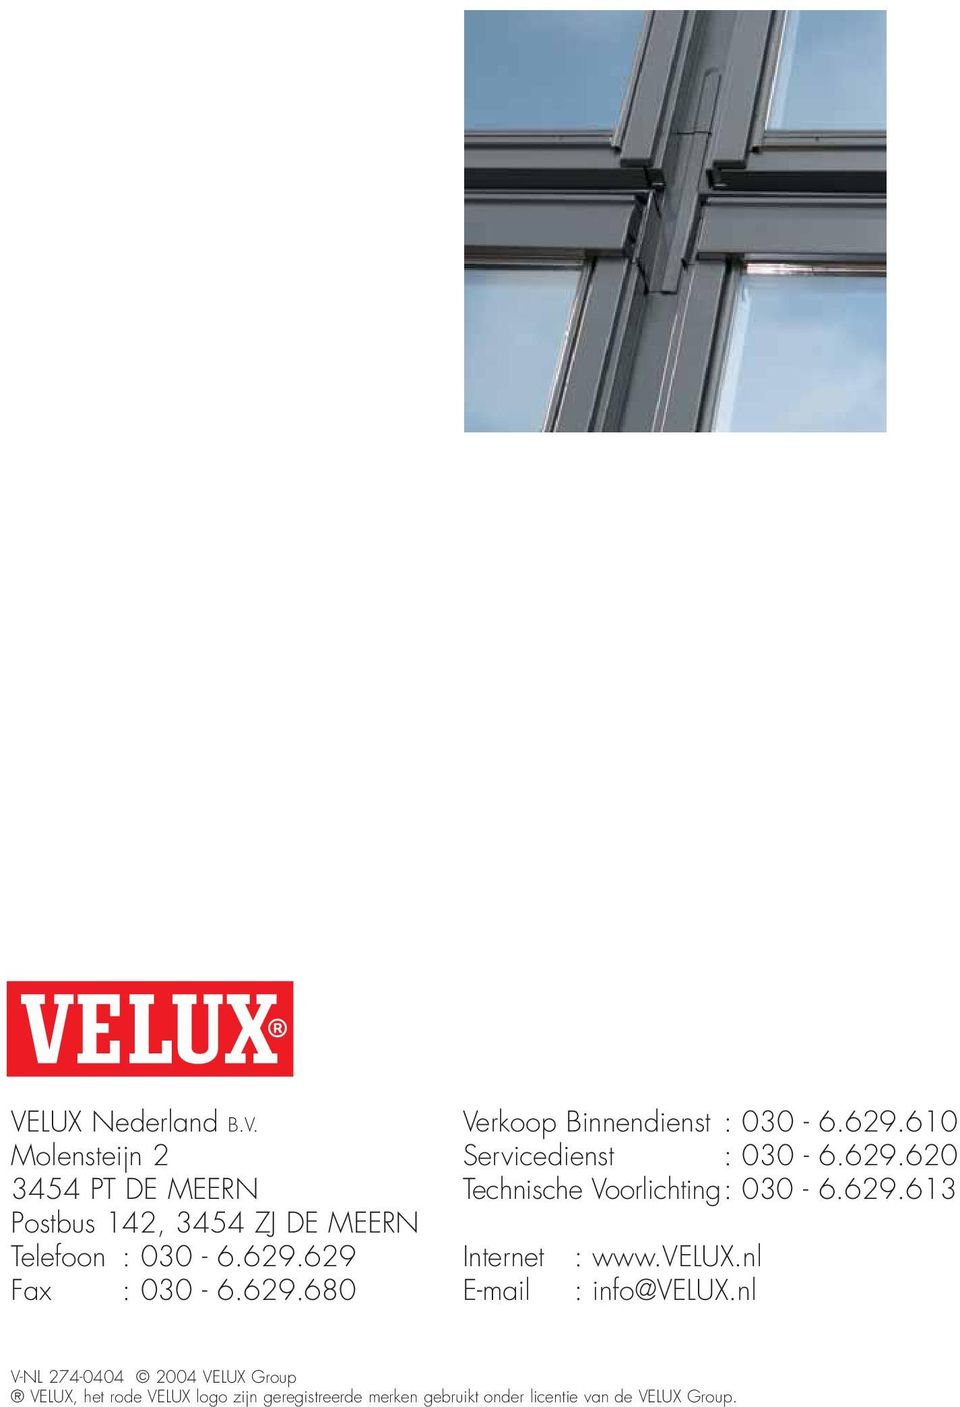 629.613 Internet E-mail : www.velux.nl : info@velux.